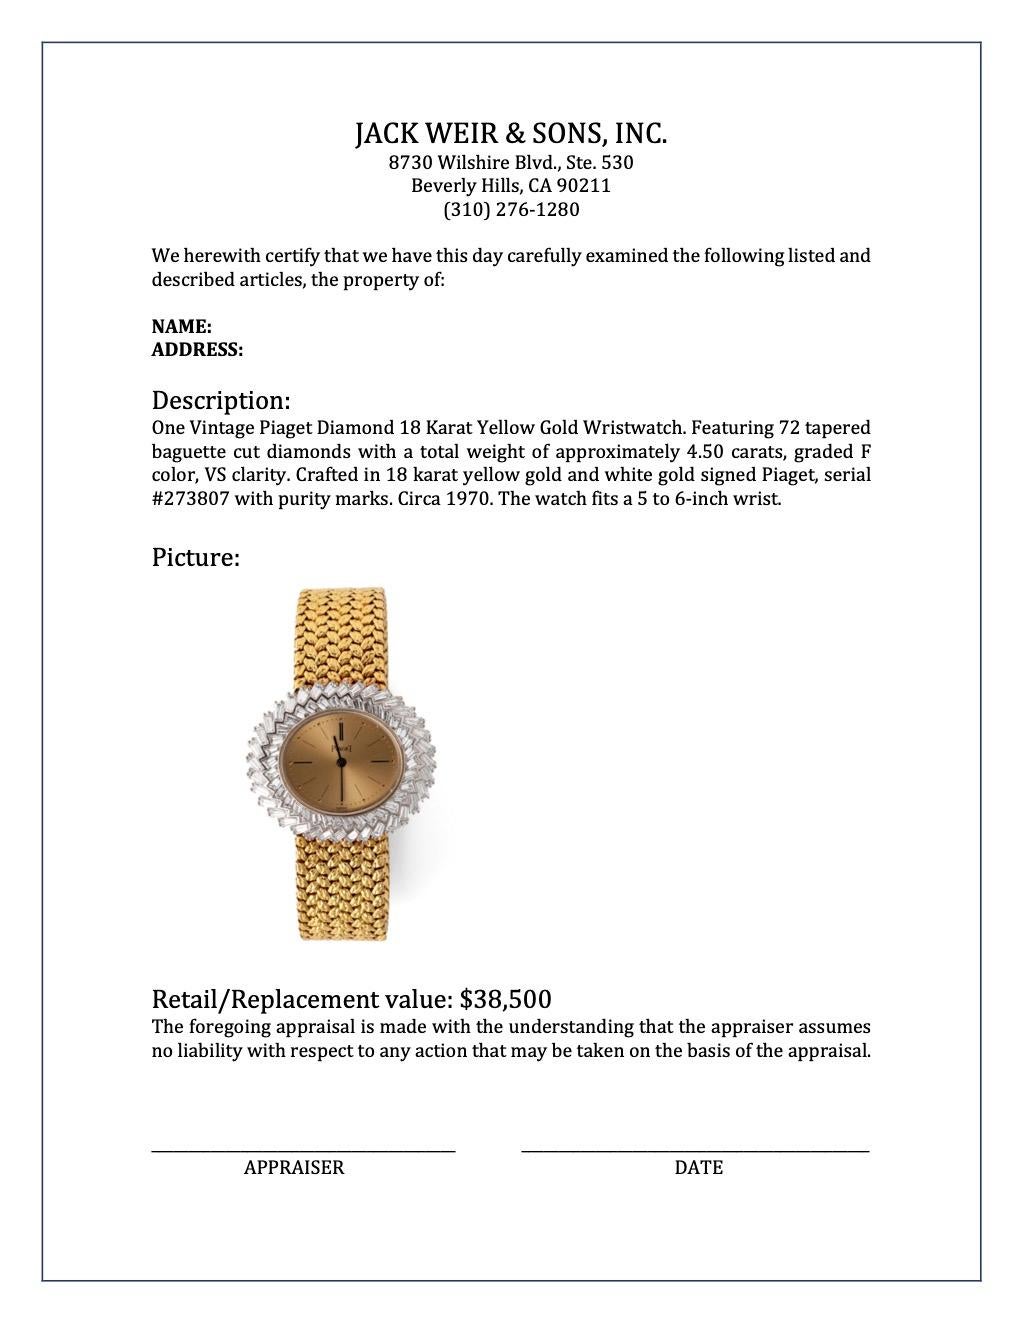 Women's or Men's Vintage Piaget Diamond 18 Karat Yellow Gold Wristwatch